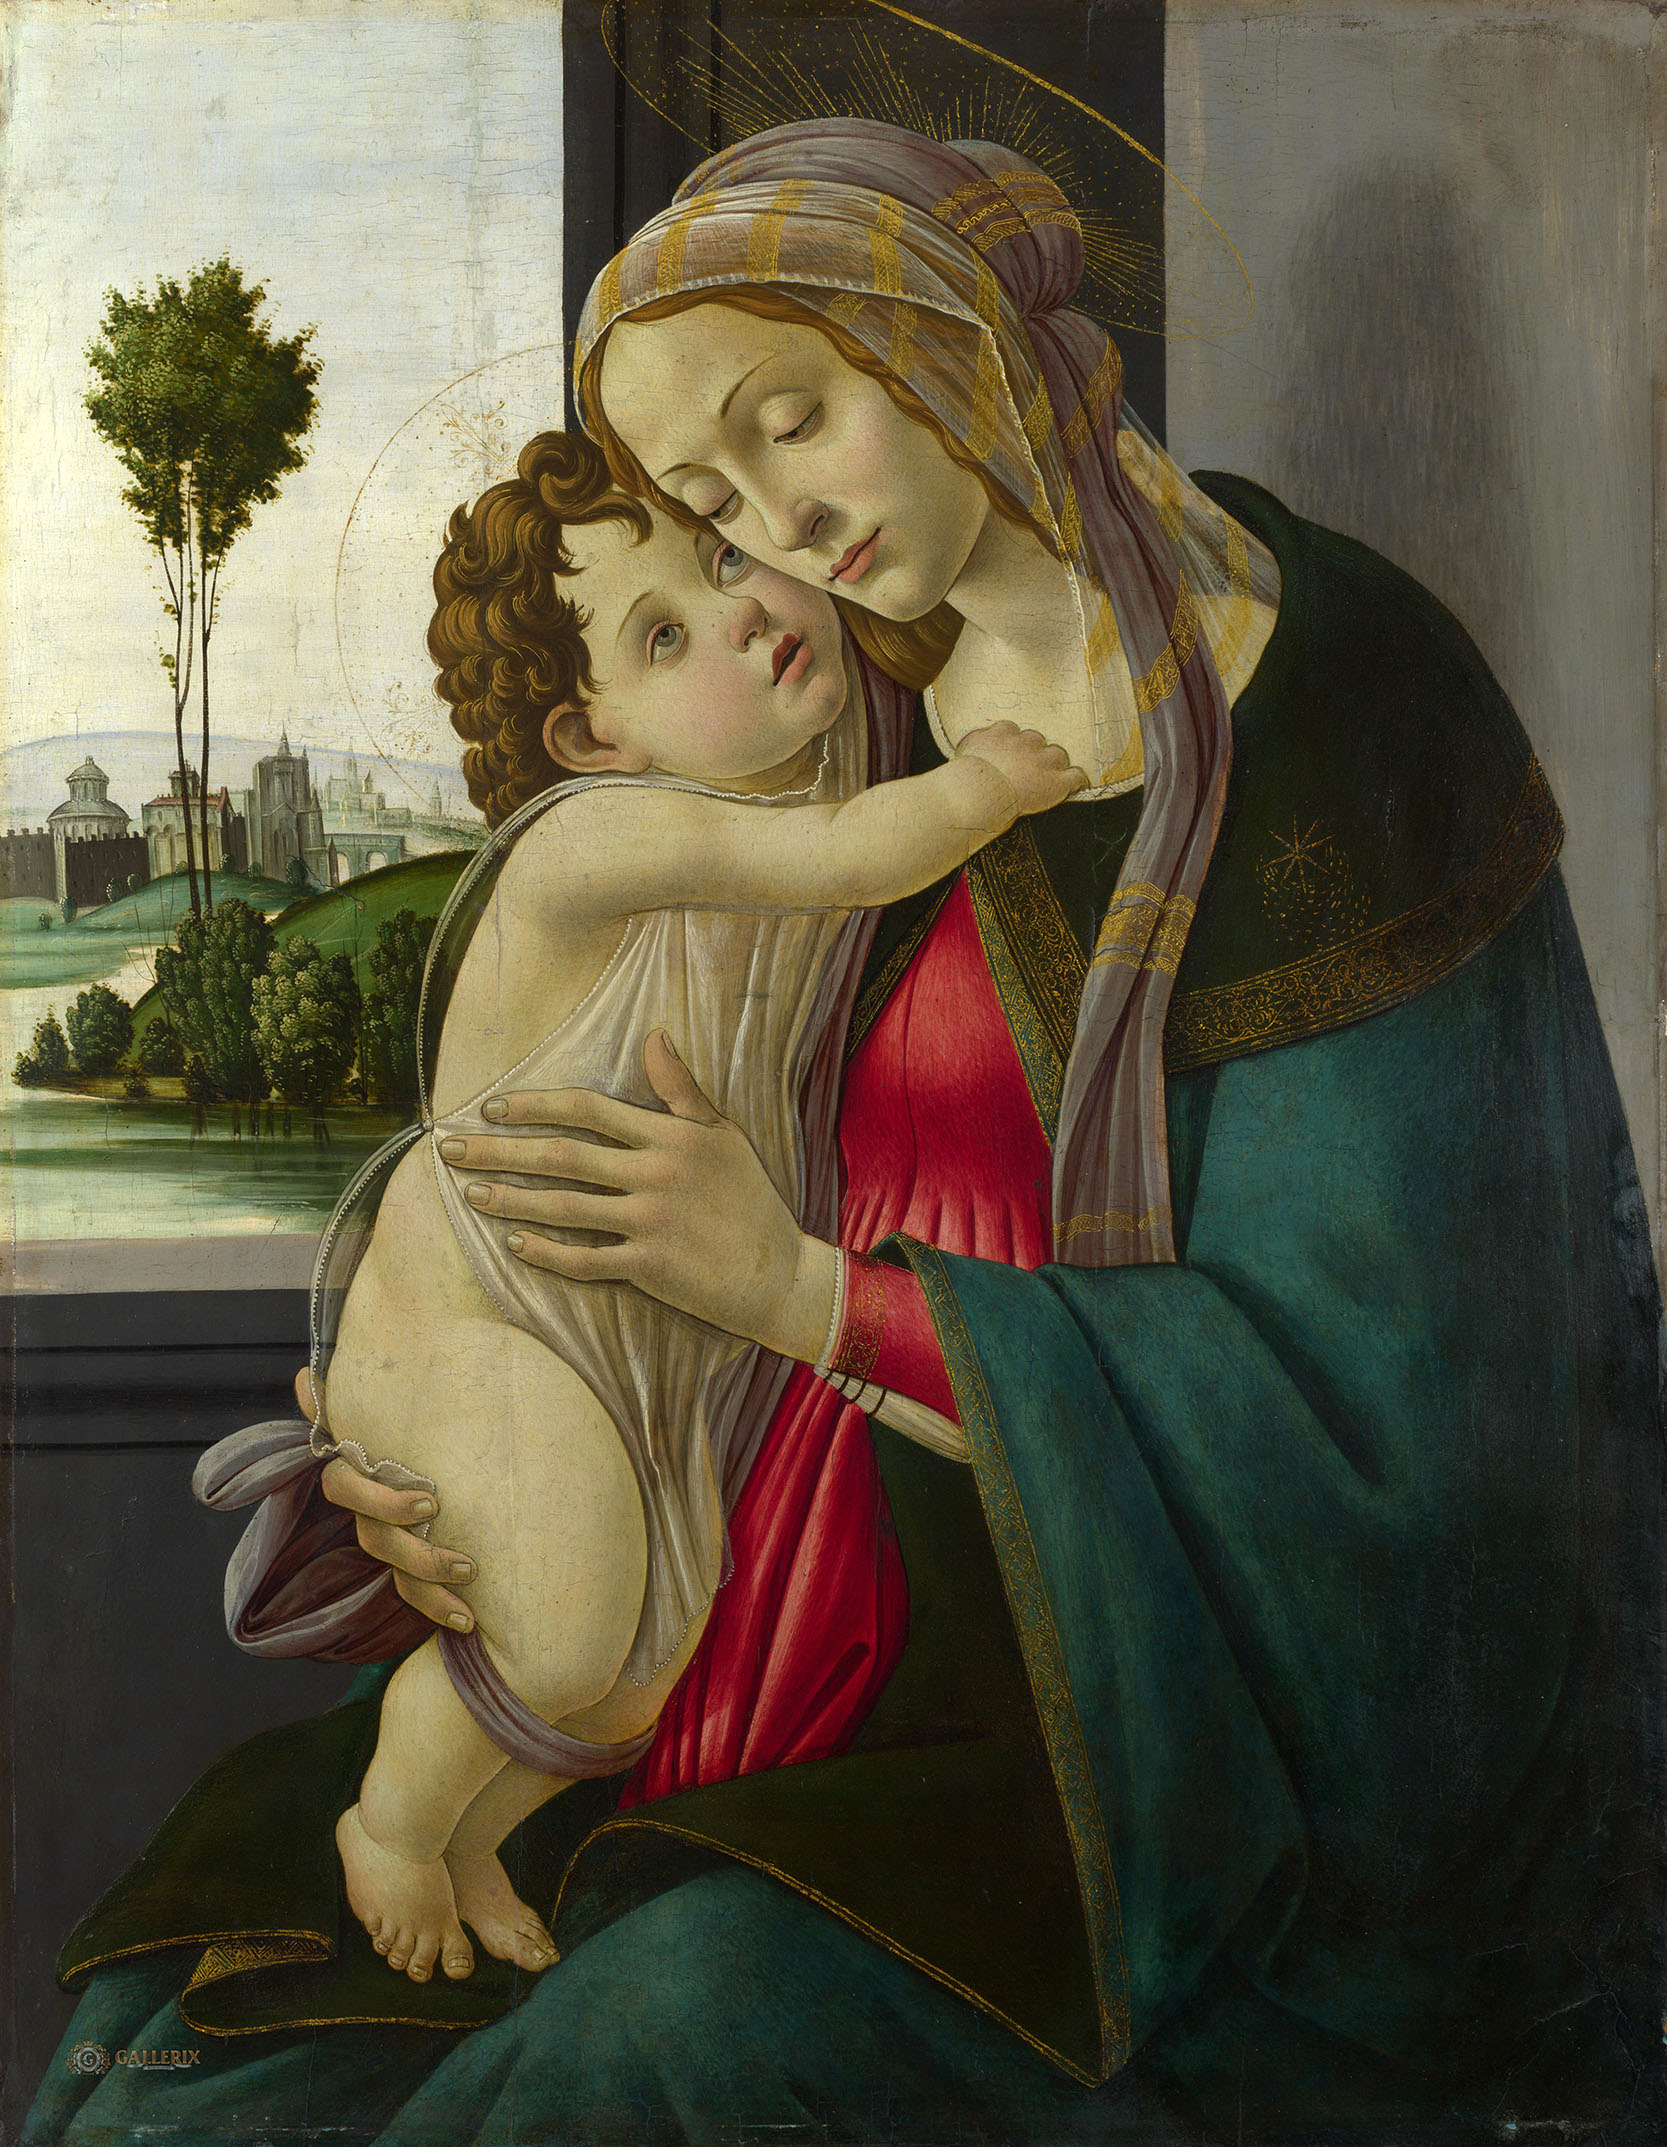 Сандро Боттичелли, мастерская. "Мадонна с Младенцем". 1475-1500. Национальная галерея, Лондон.